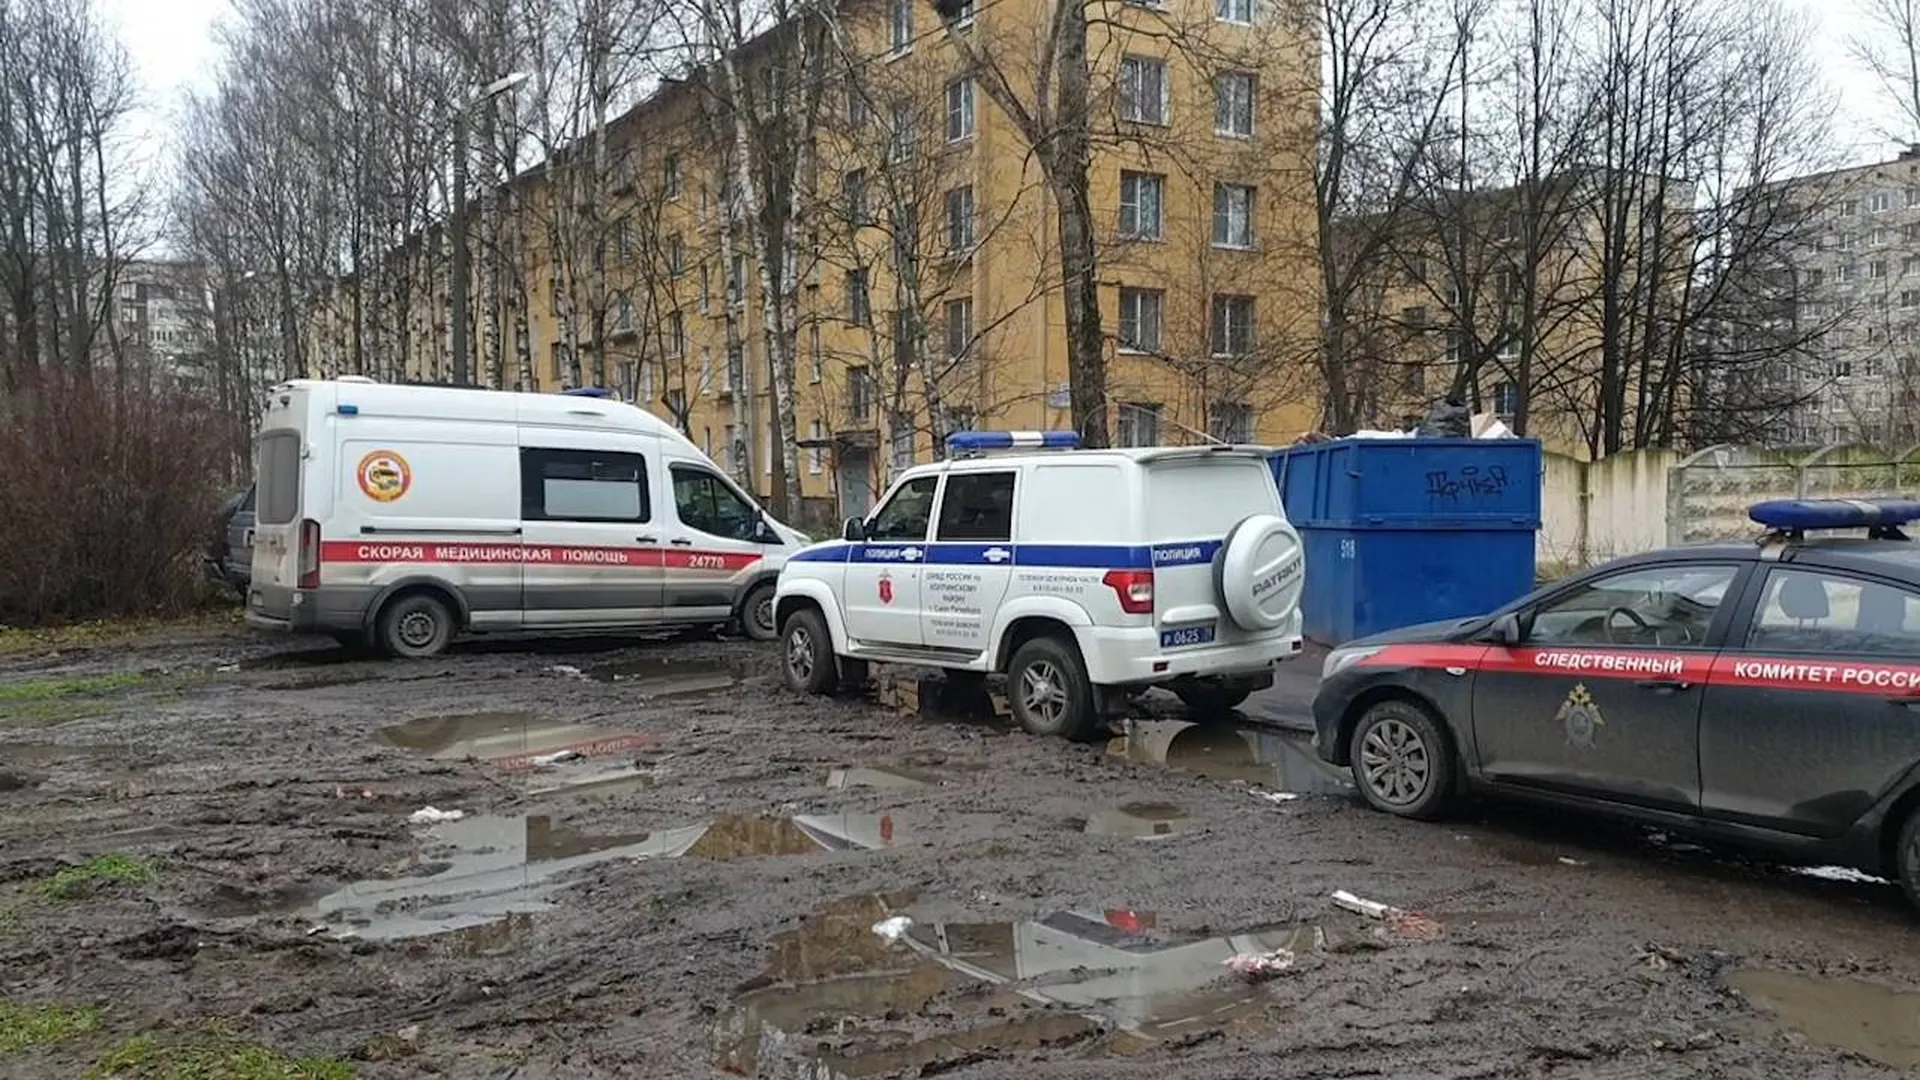 Появилось видео из Петербурга, где детей взяли в заложники